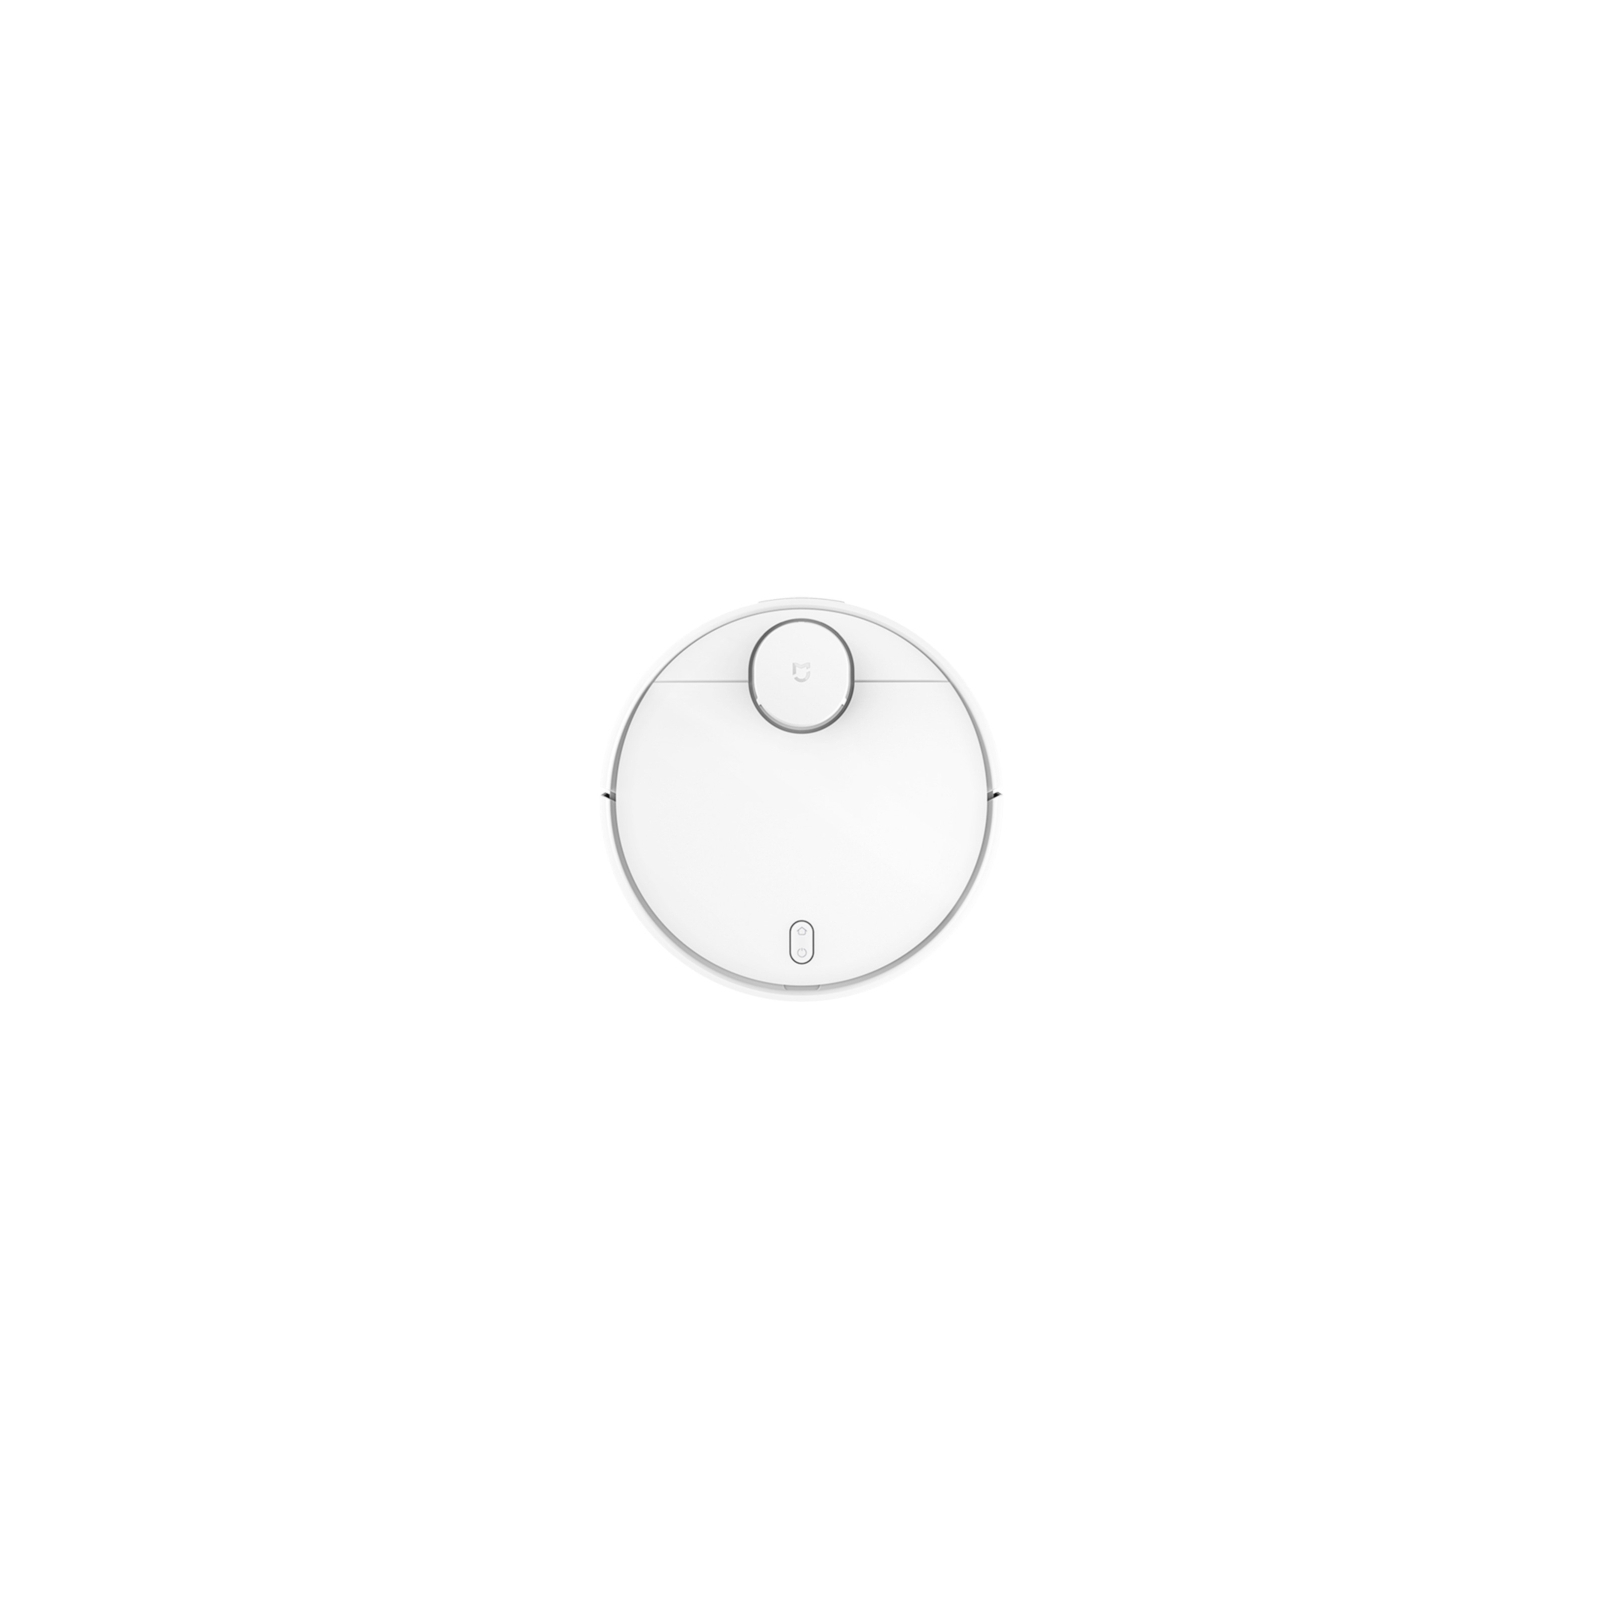 Пилосос Xiaomi Mi Robot Vacuum Cleaner white (STYJ02YM)